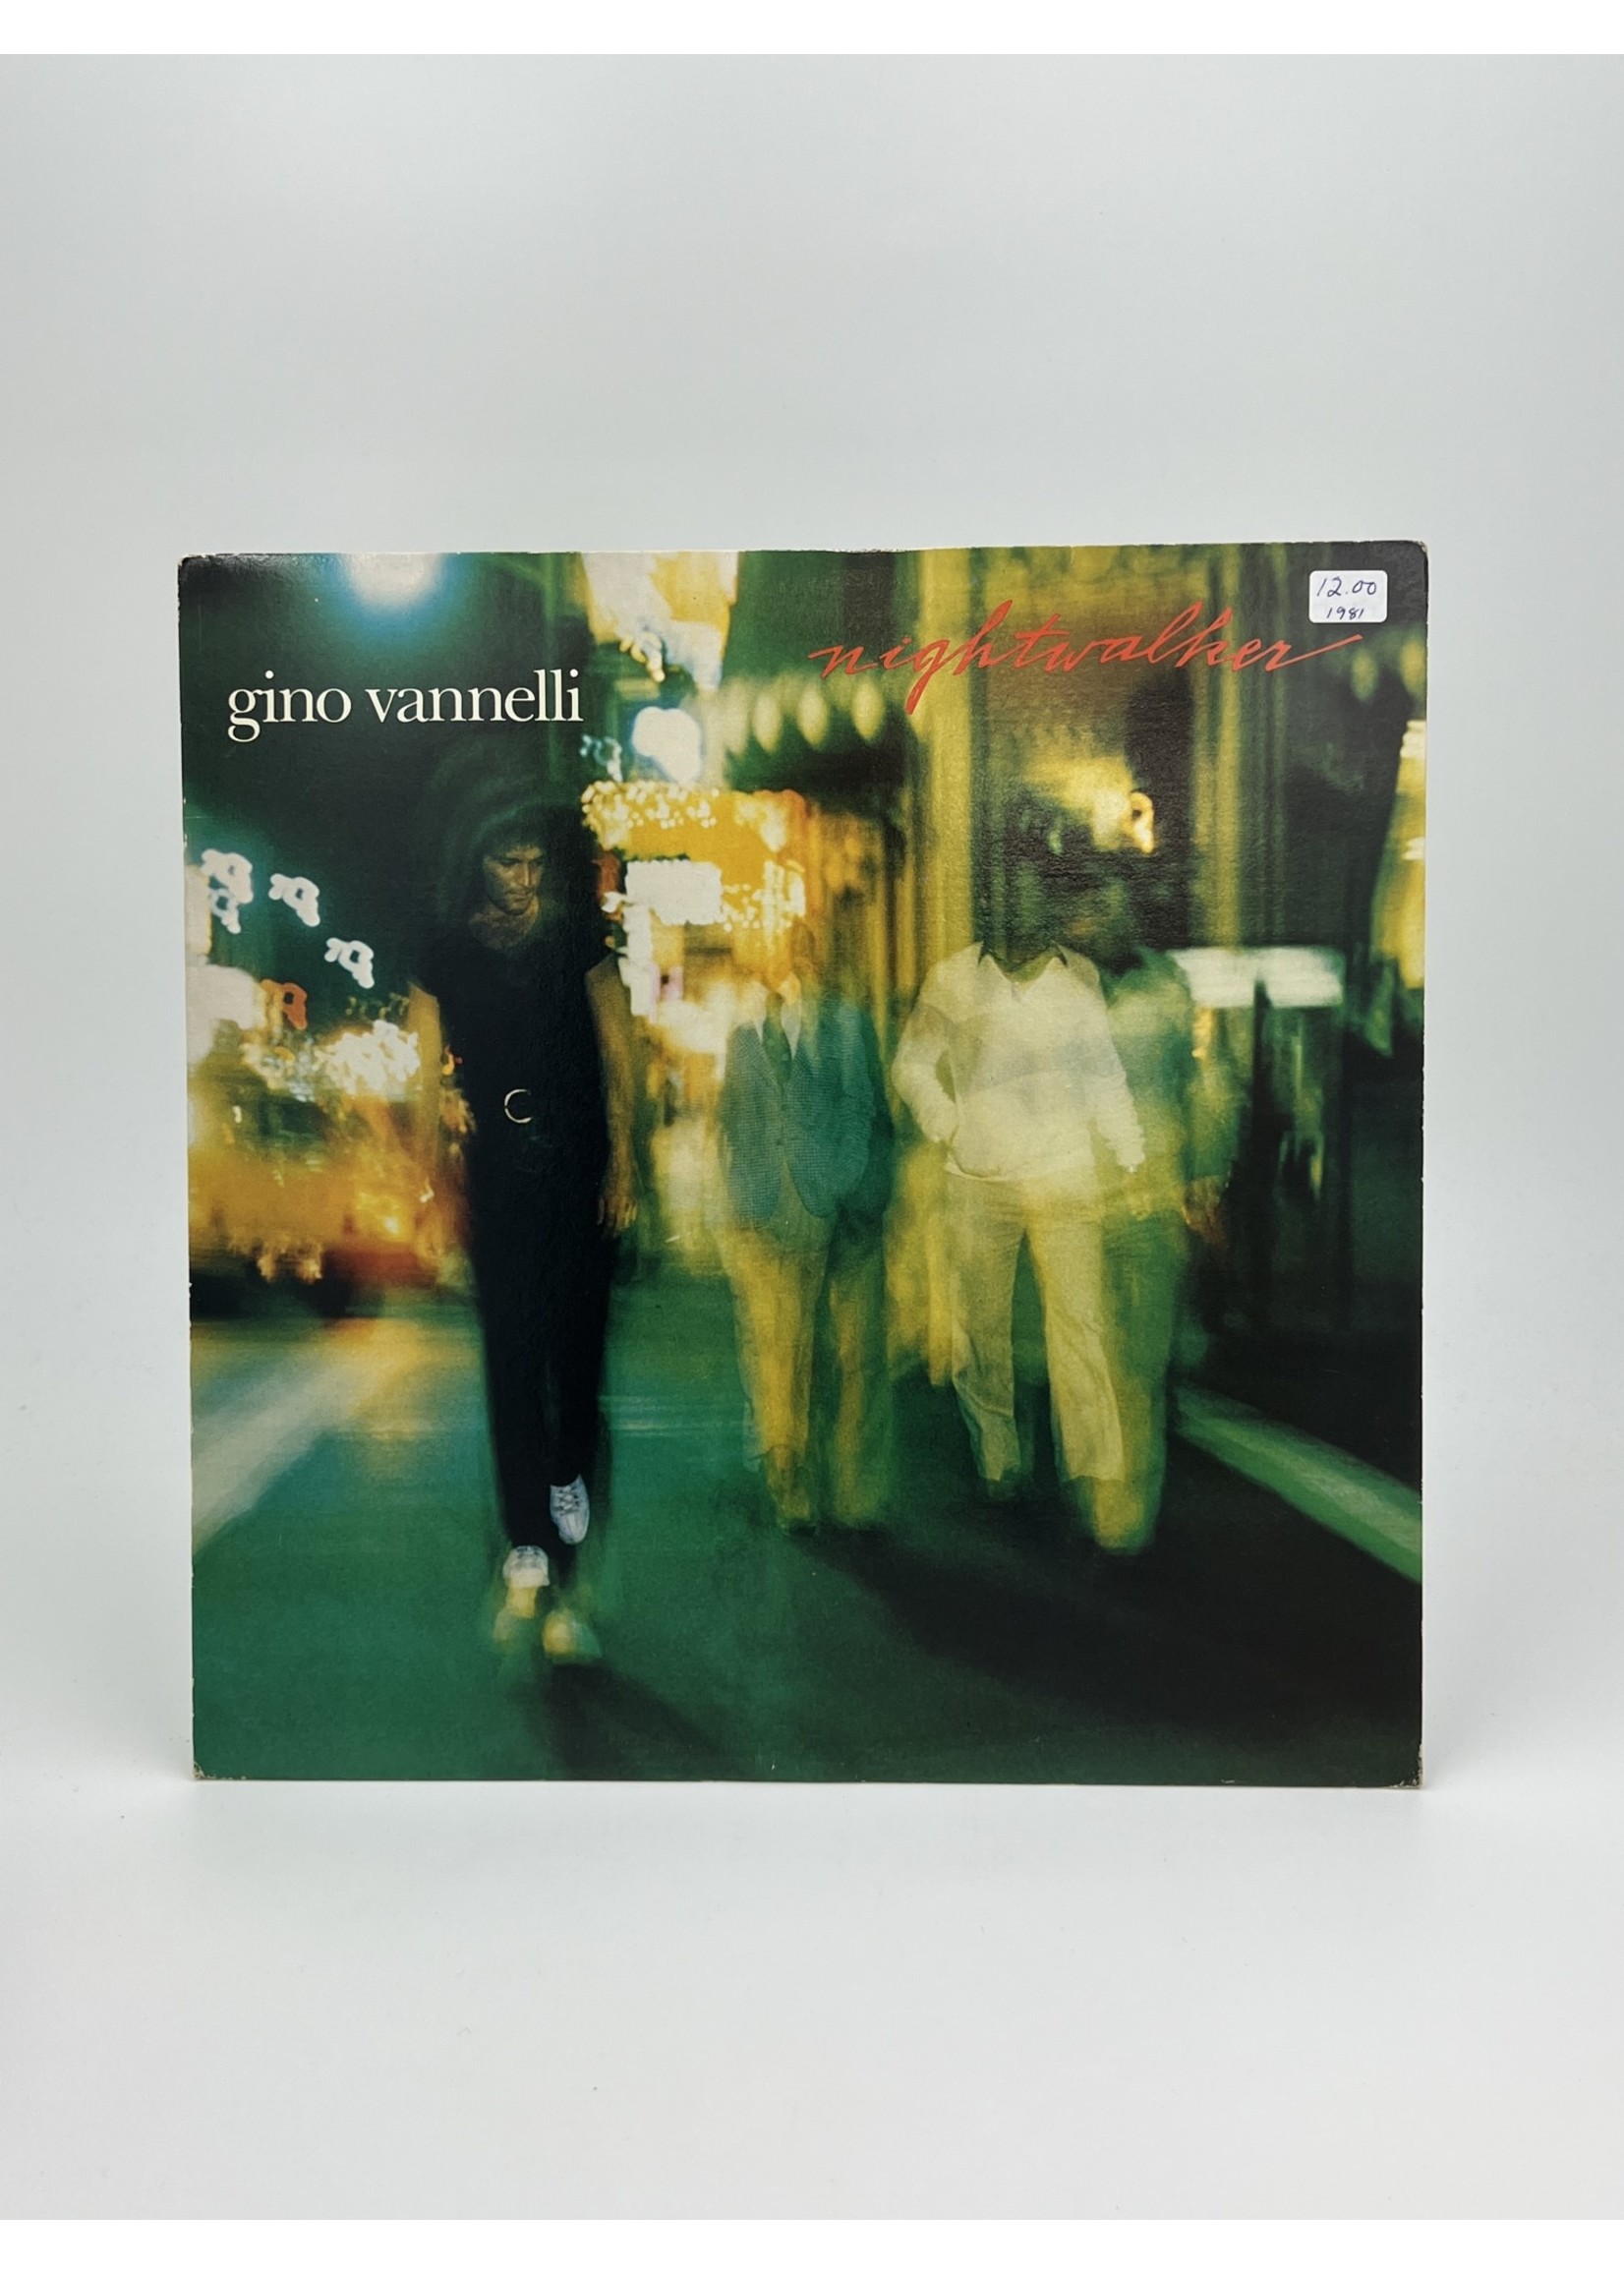 LP Gino Vannelli Nightwalker LP Record